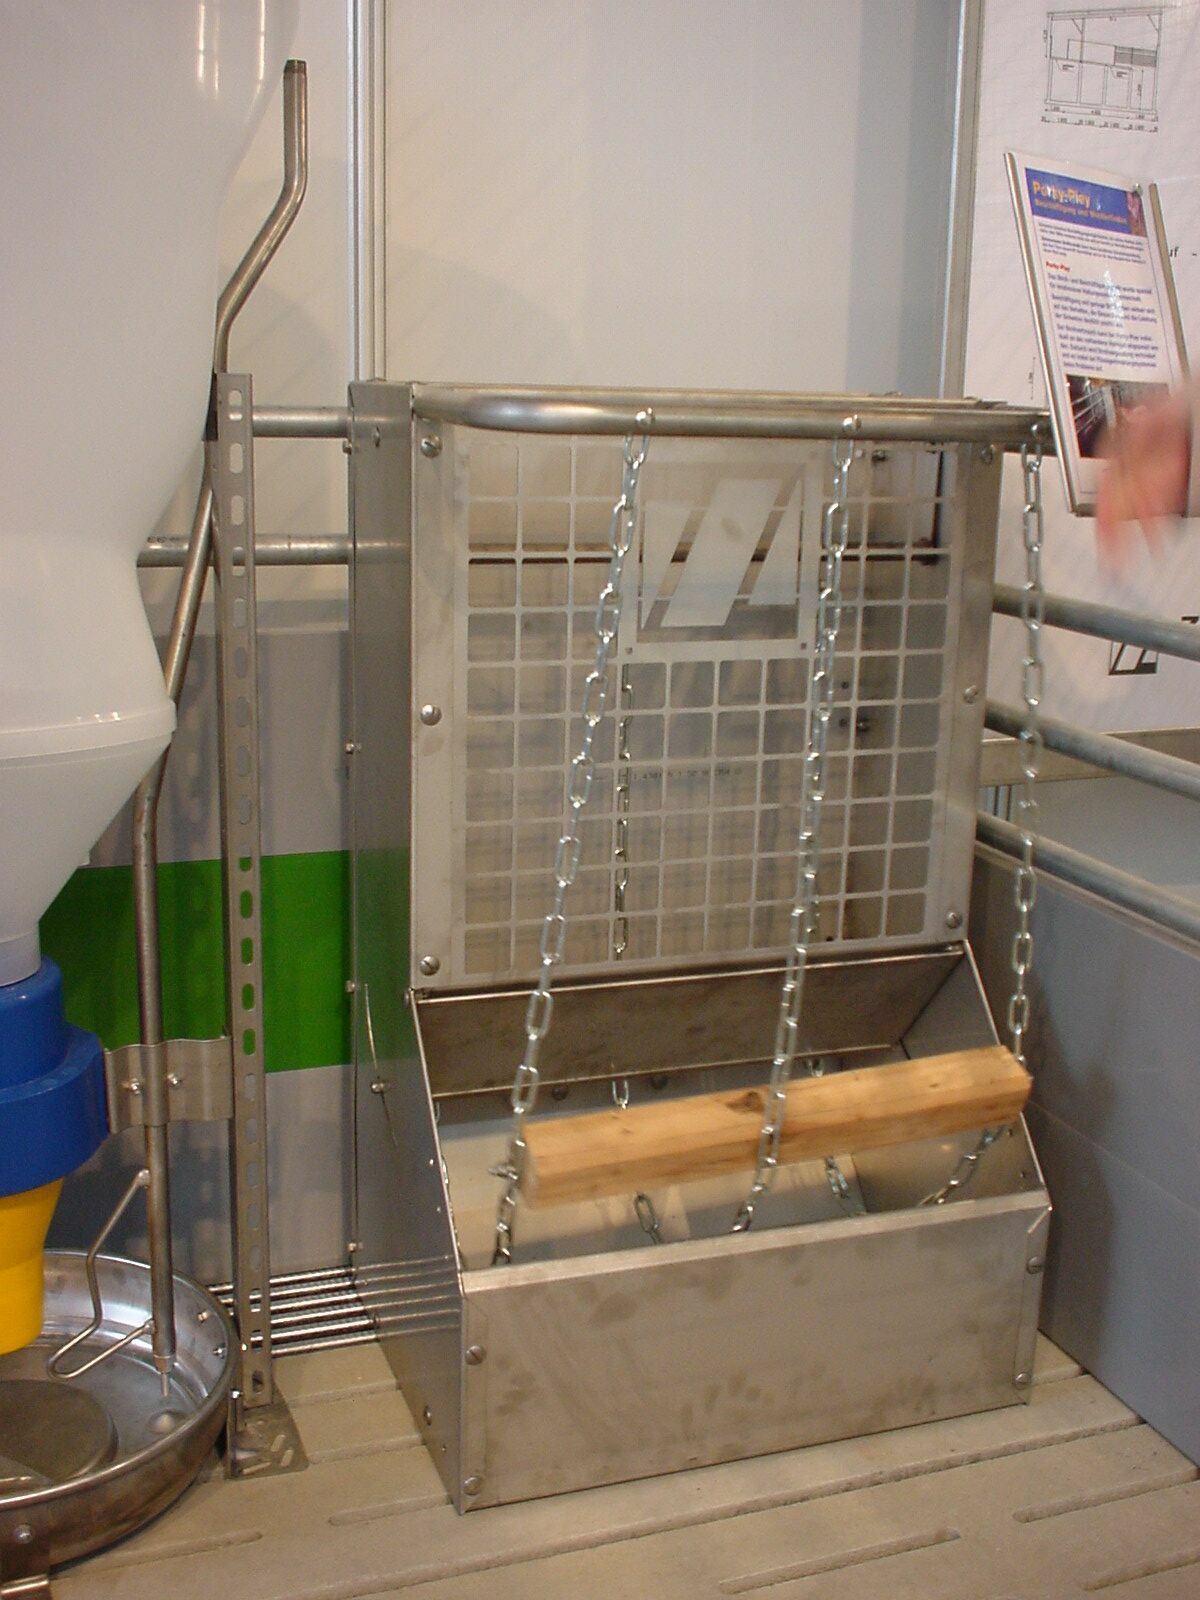 Beispiel Beschäftigungsmaterial Ferkelaufzucht und / oder Mast: Stroh-/Heuraufe plus Kette mit Holz (Nagebalken)  © Unbekannt